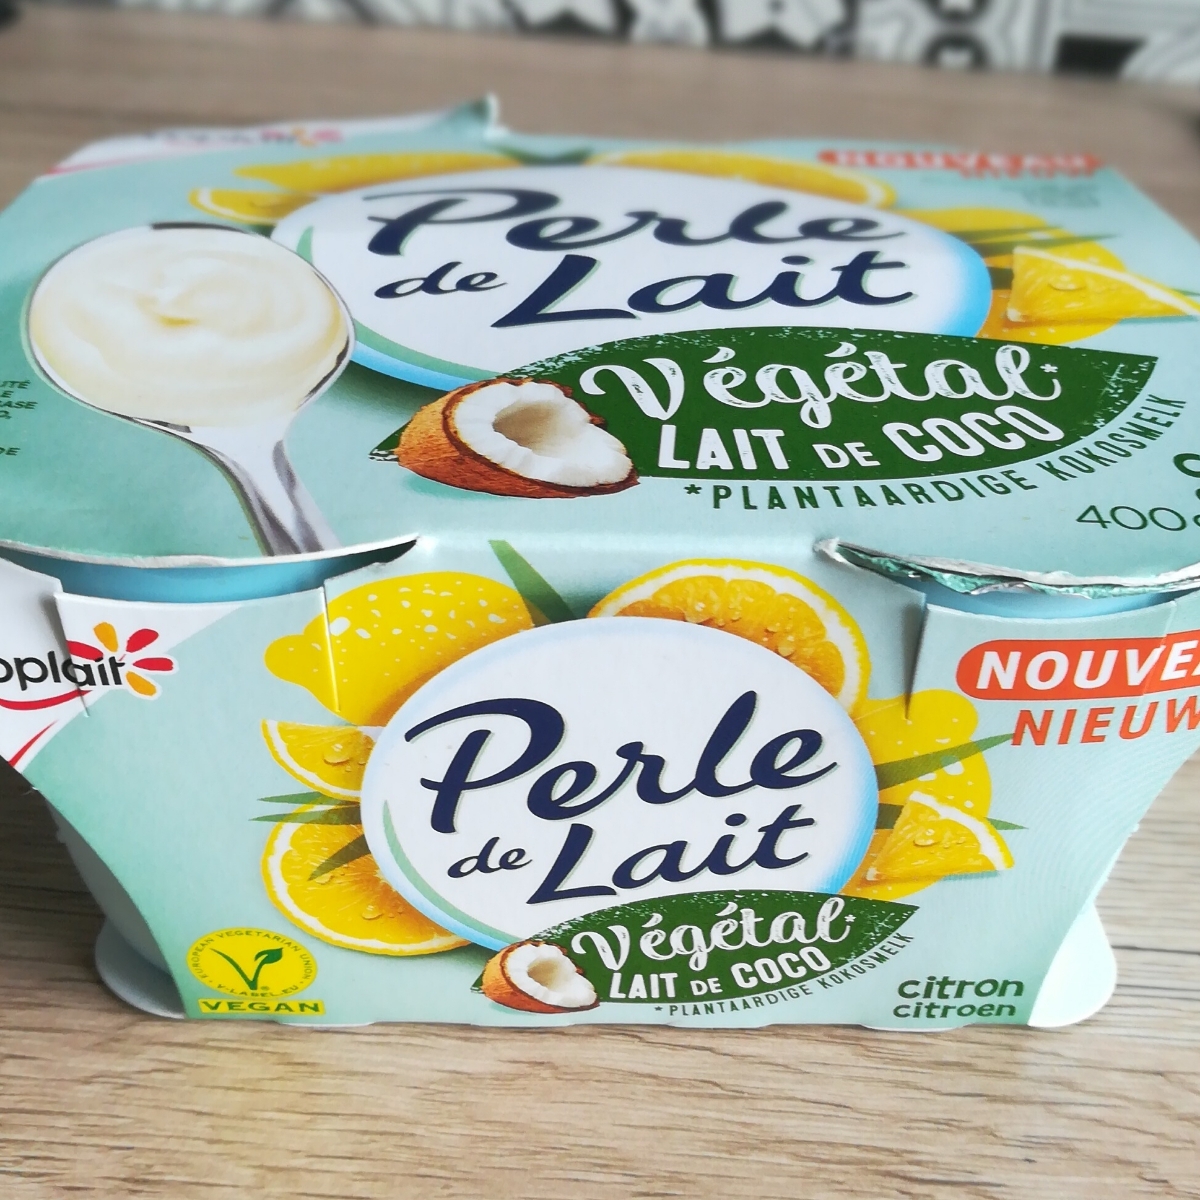 Yoplait Perle de lait végétal lait de coco citron Review | abillion